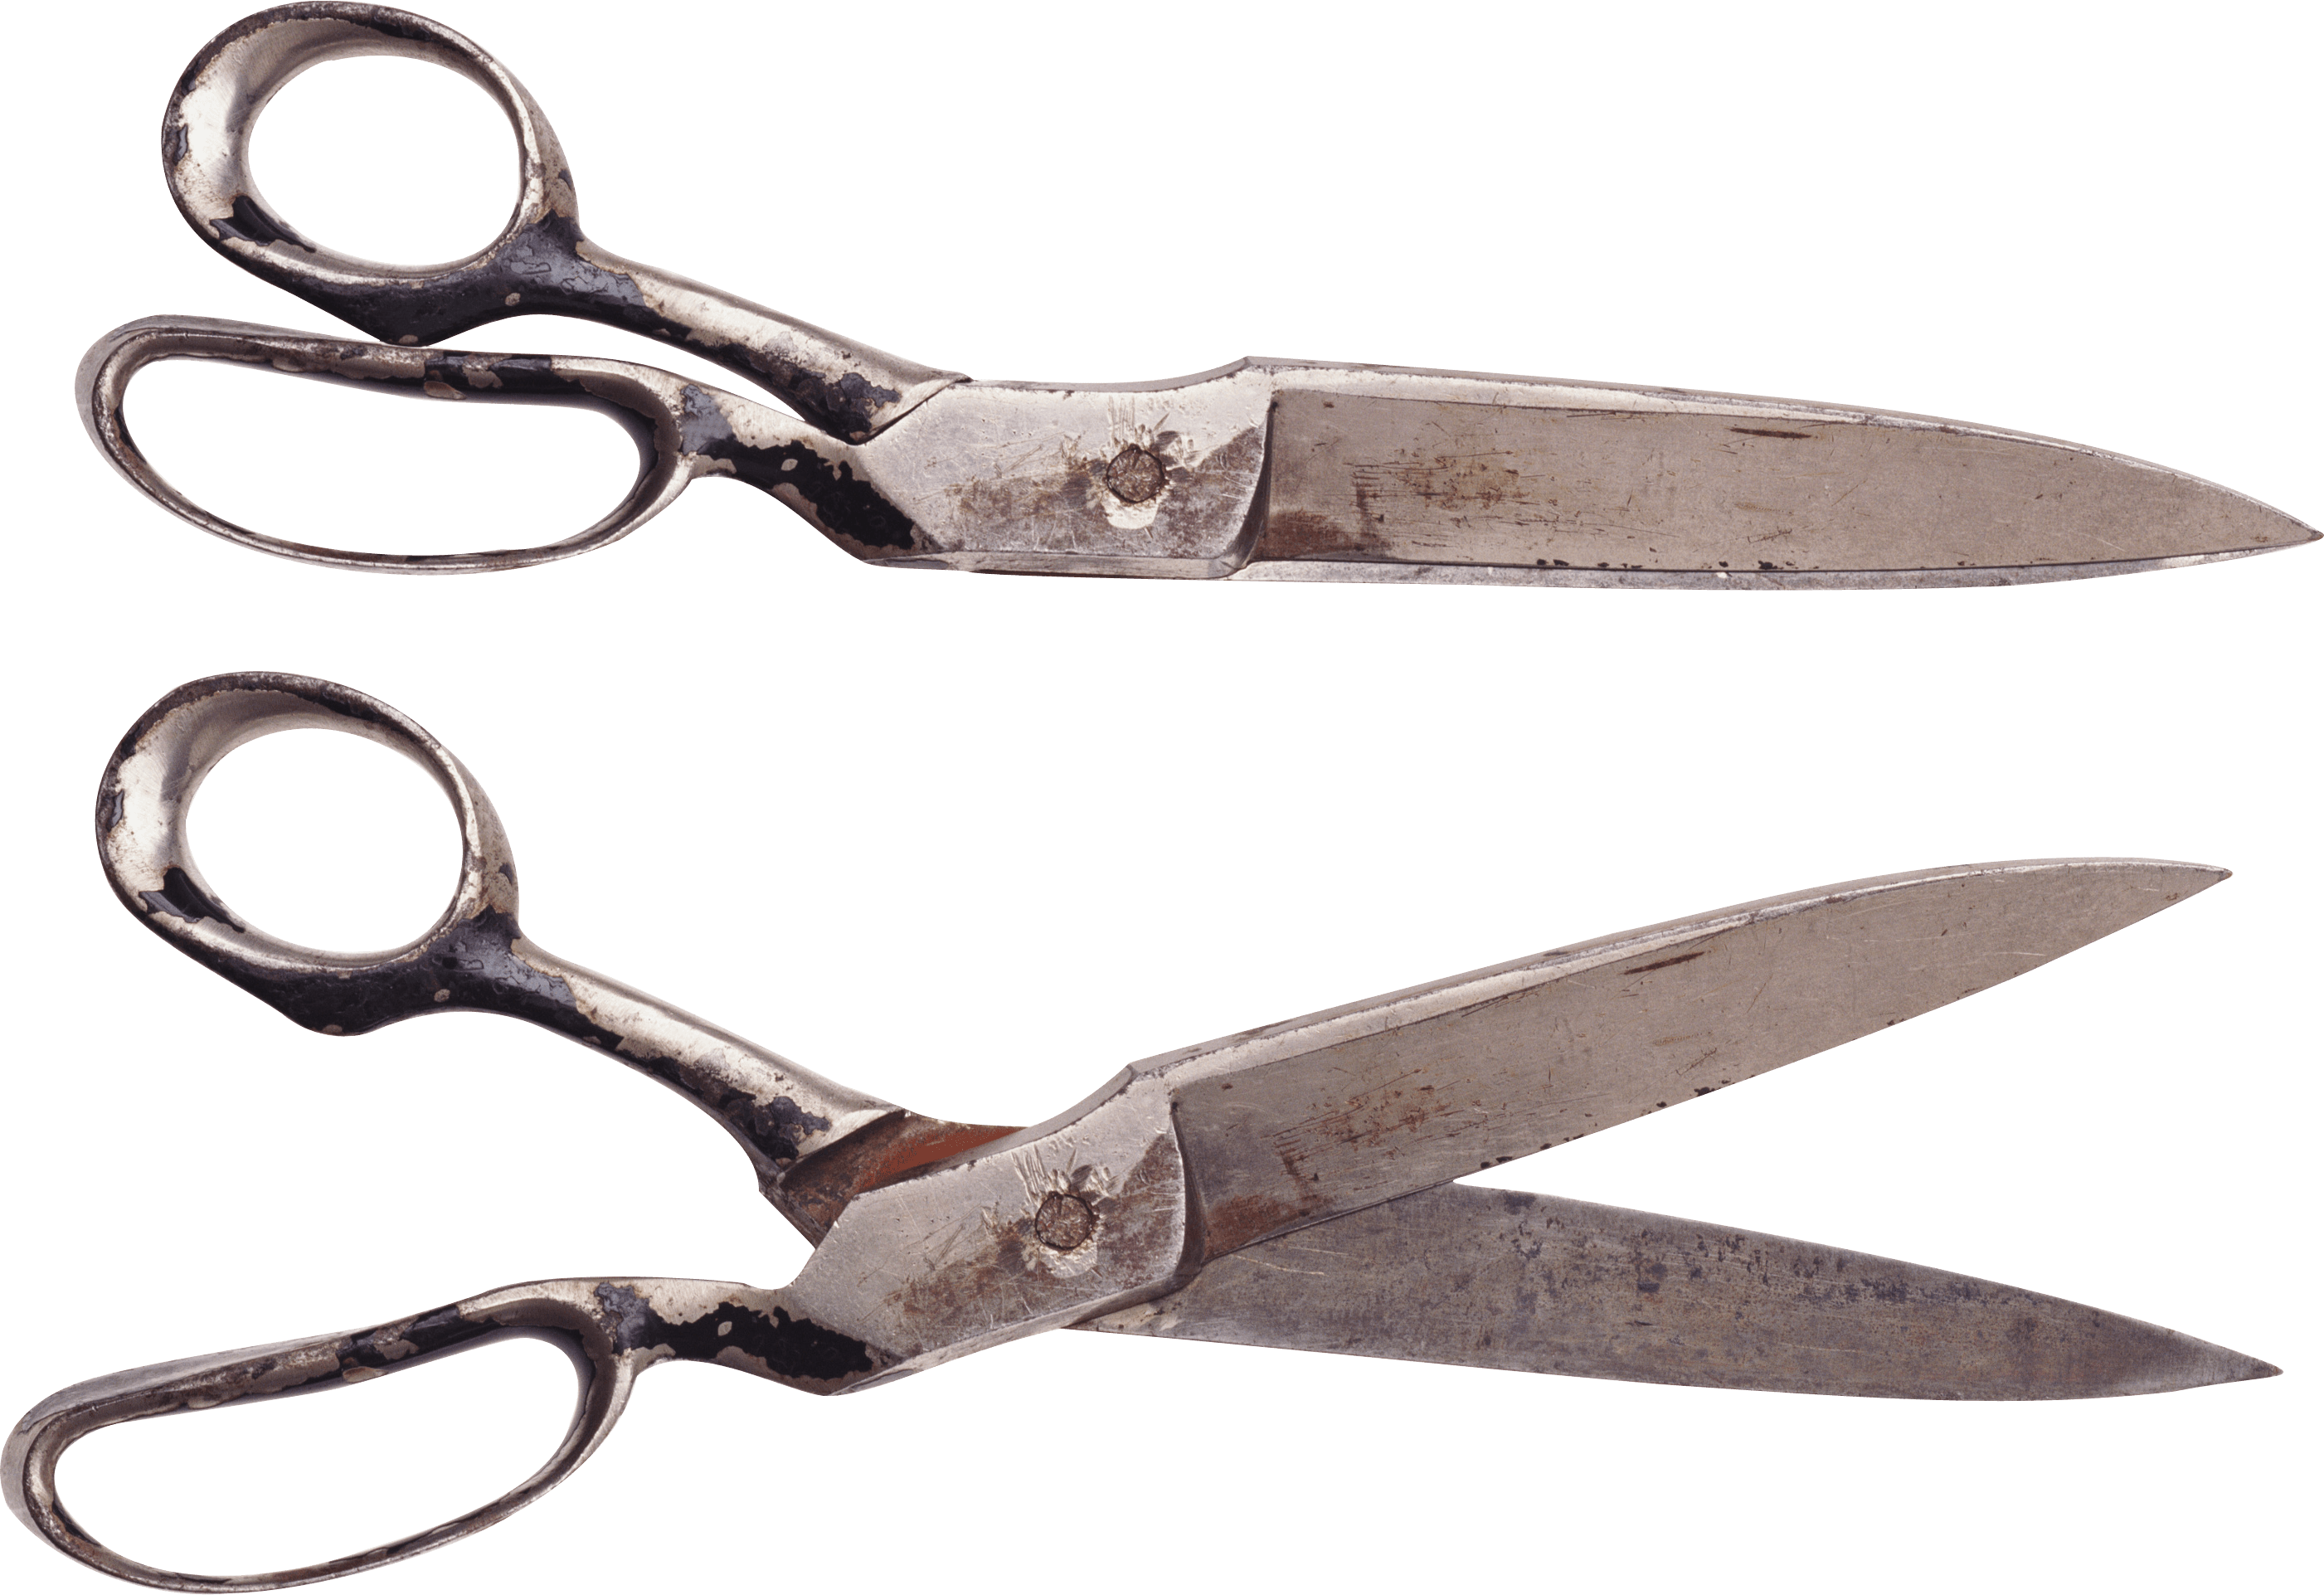 clipart scissors vintage